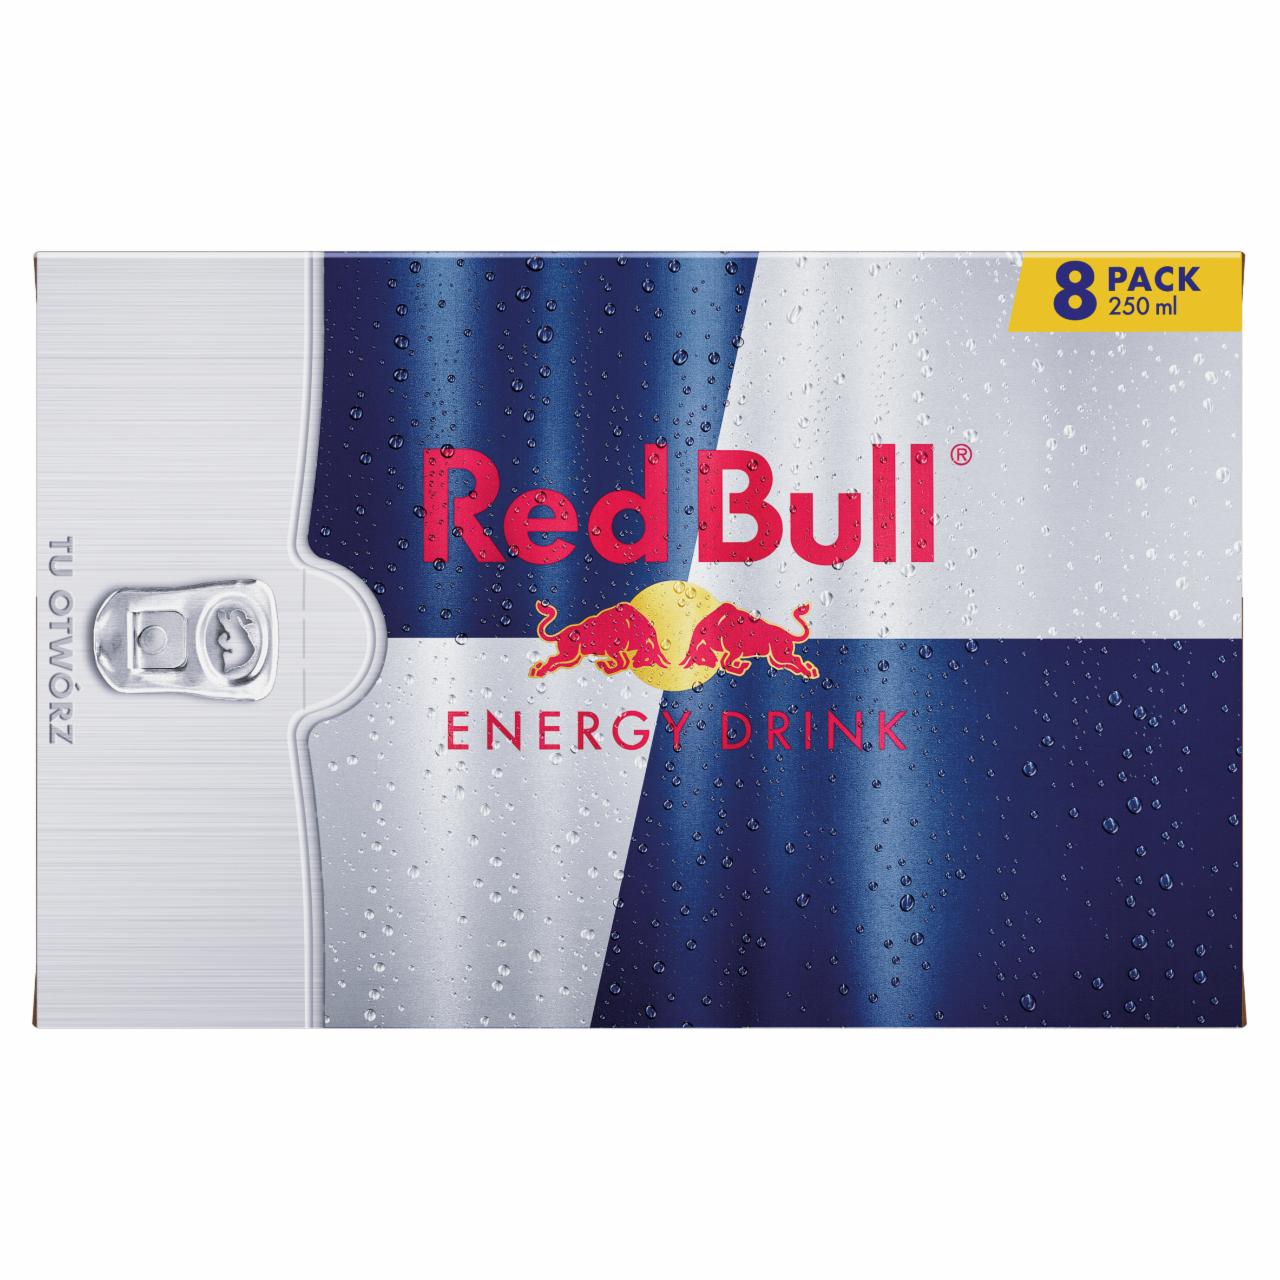 Zdjęcia - Red Bull Napój energetyczny 8 x 250 ml